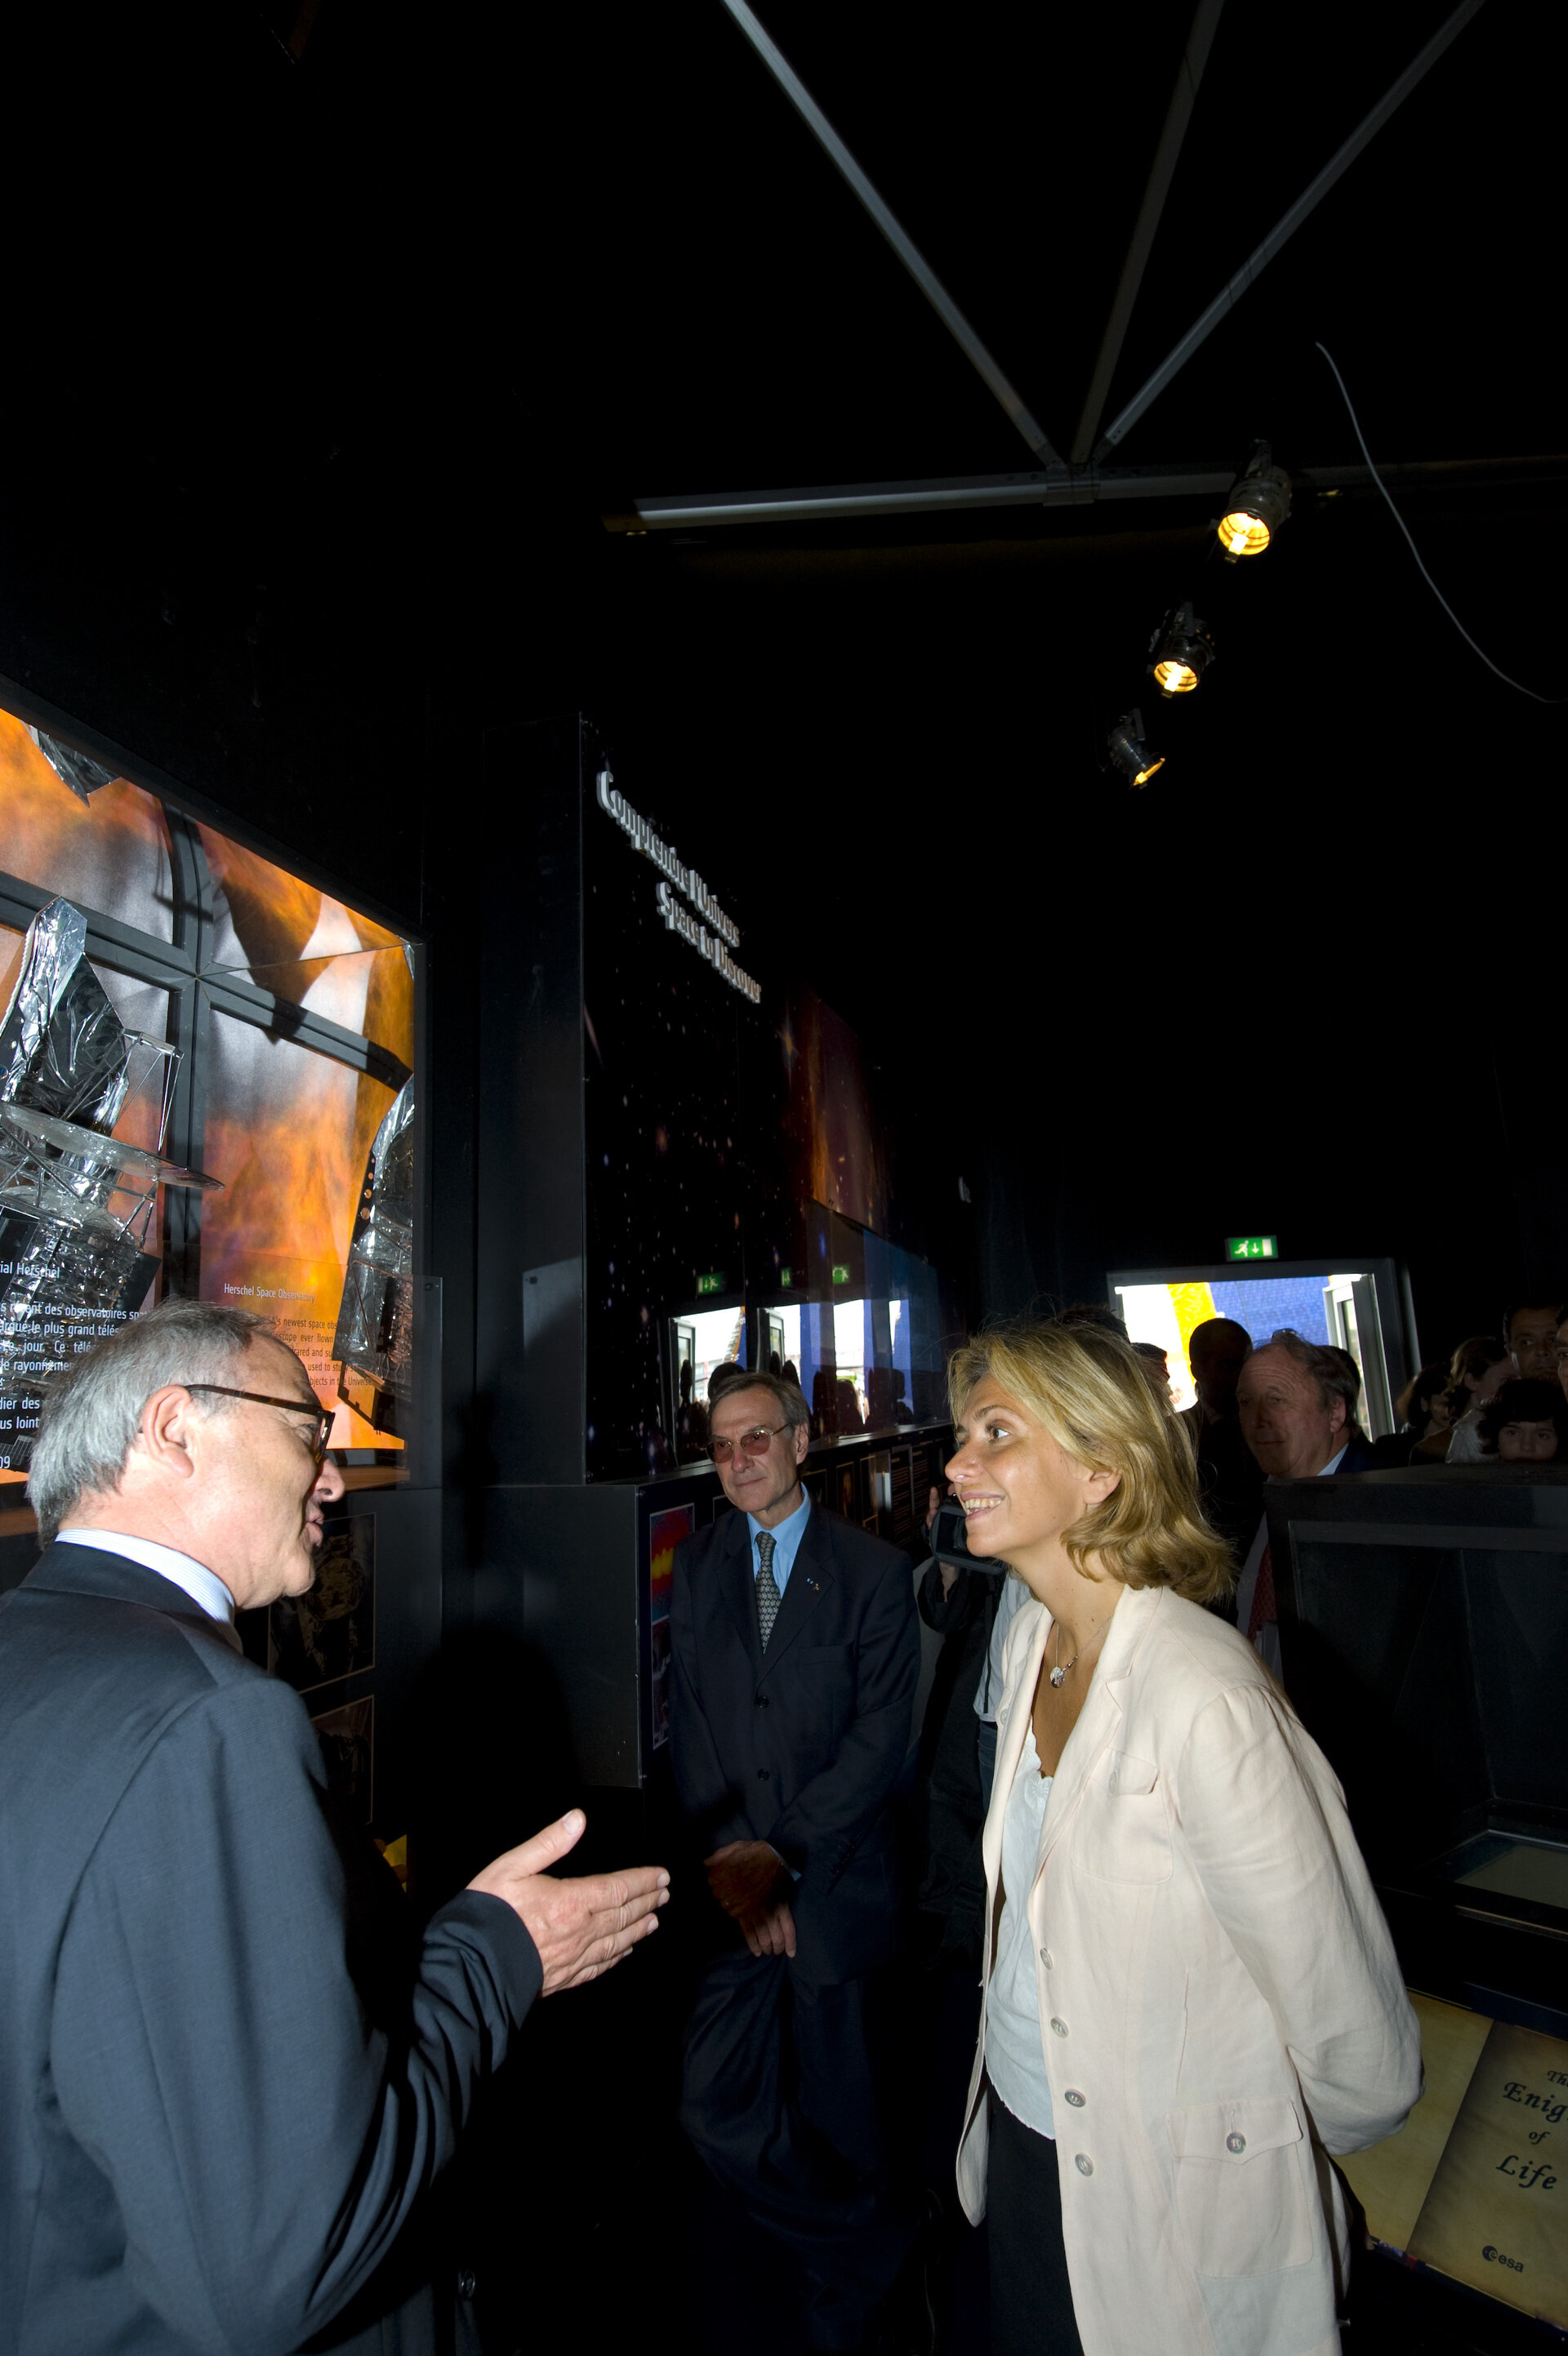 Valérie Pécresse and Jean-Jacques Dordain visit the ESA Pavilion